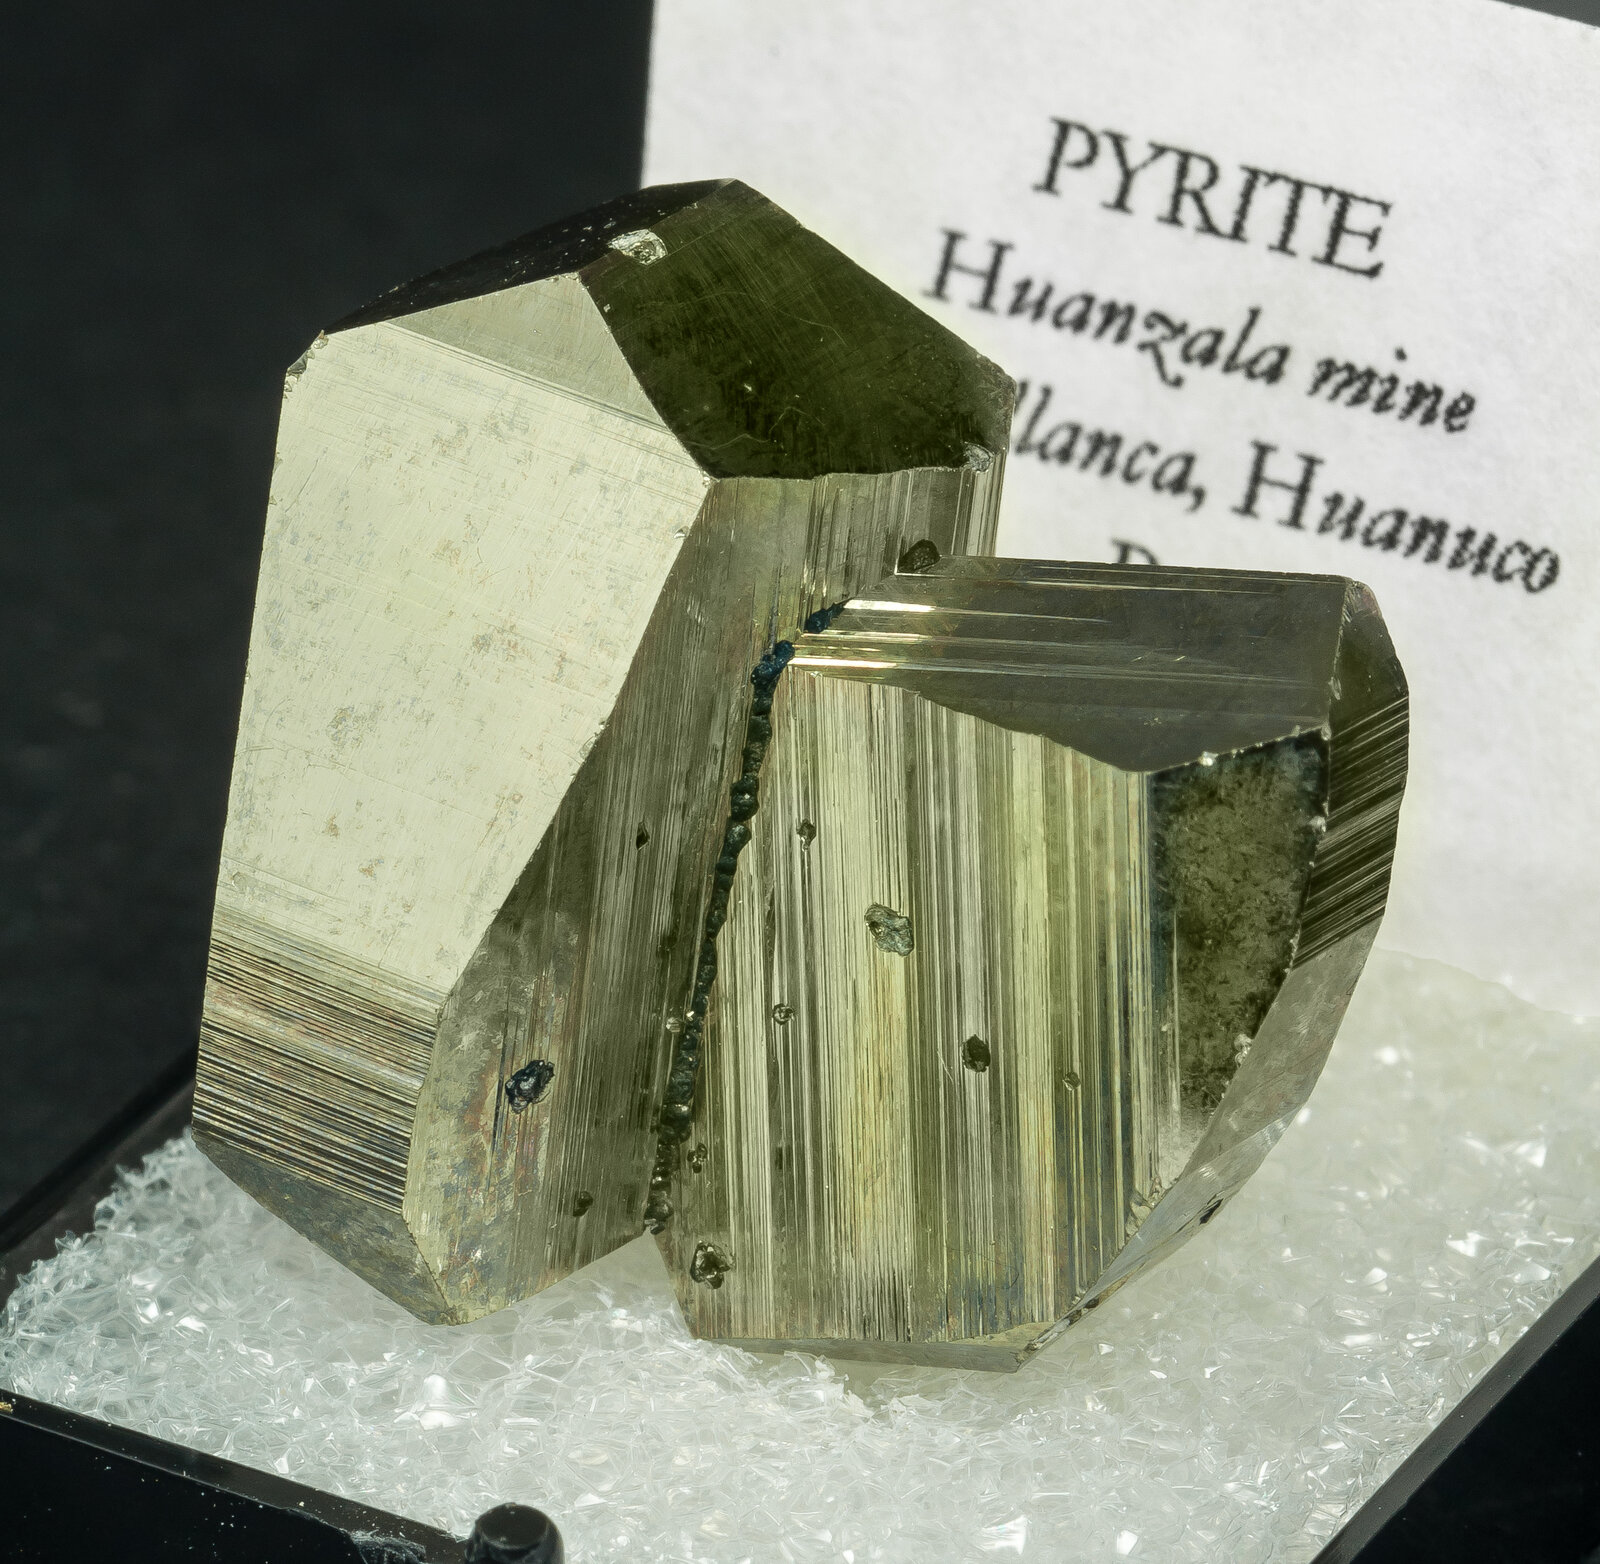 specimens/s_imagesAO4/Pyrite-TBD26AO4s.jpg